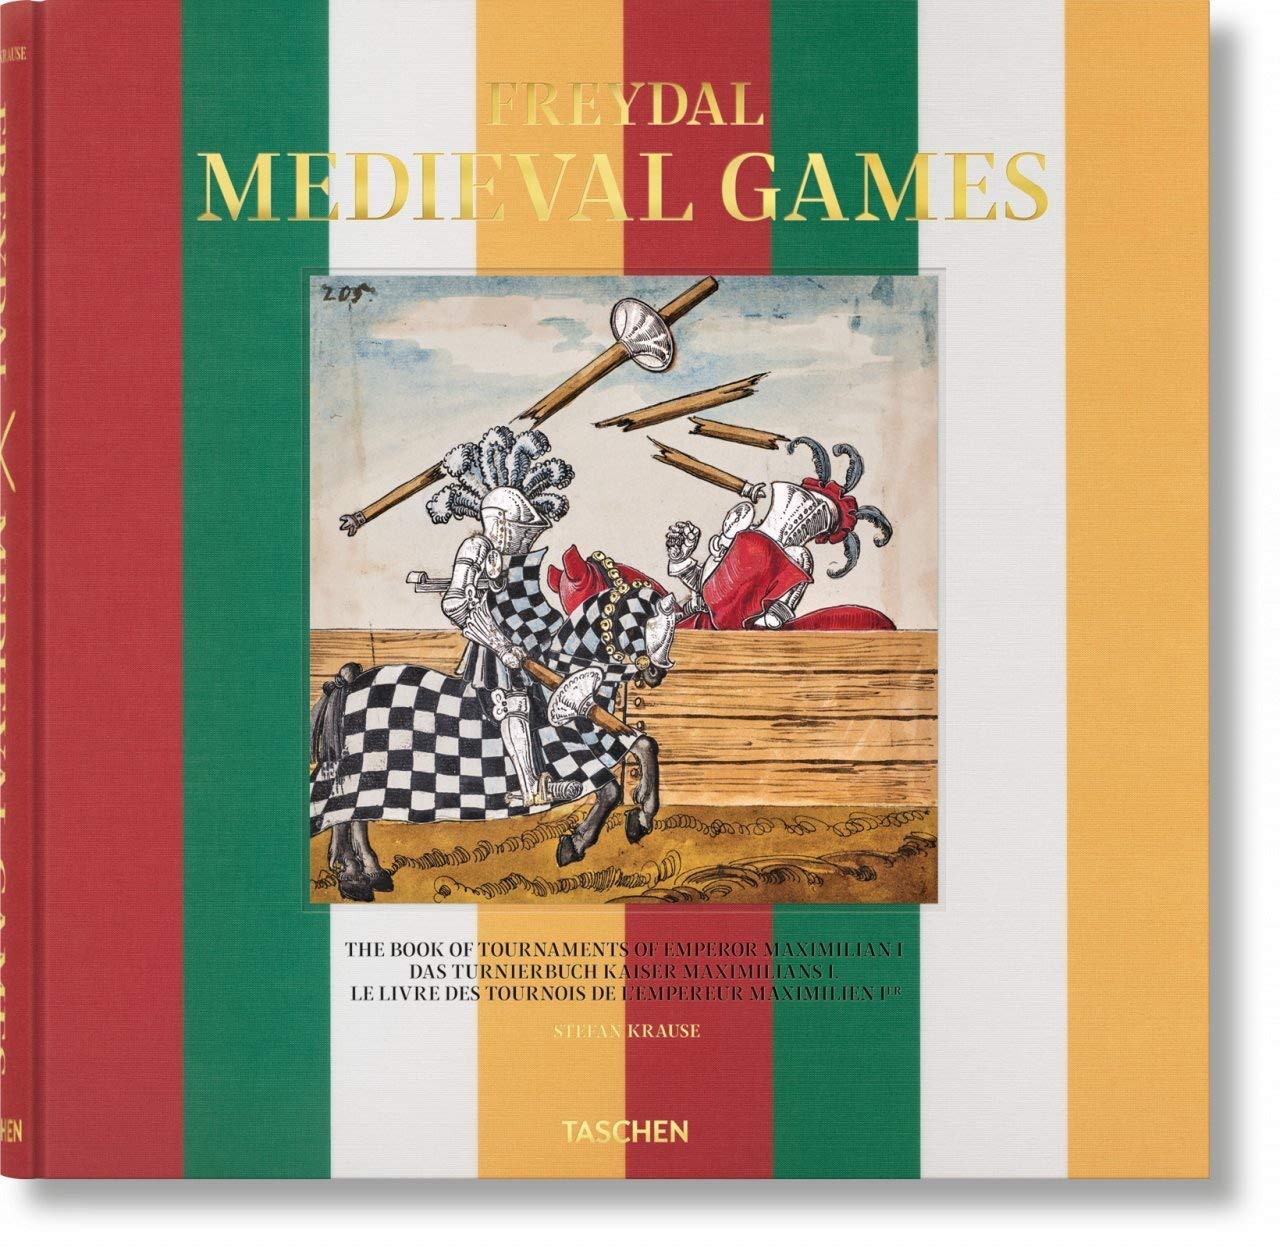 Freydal. Medieval Games | Stefan Krause